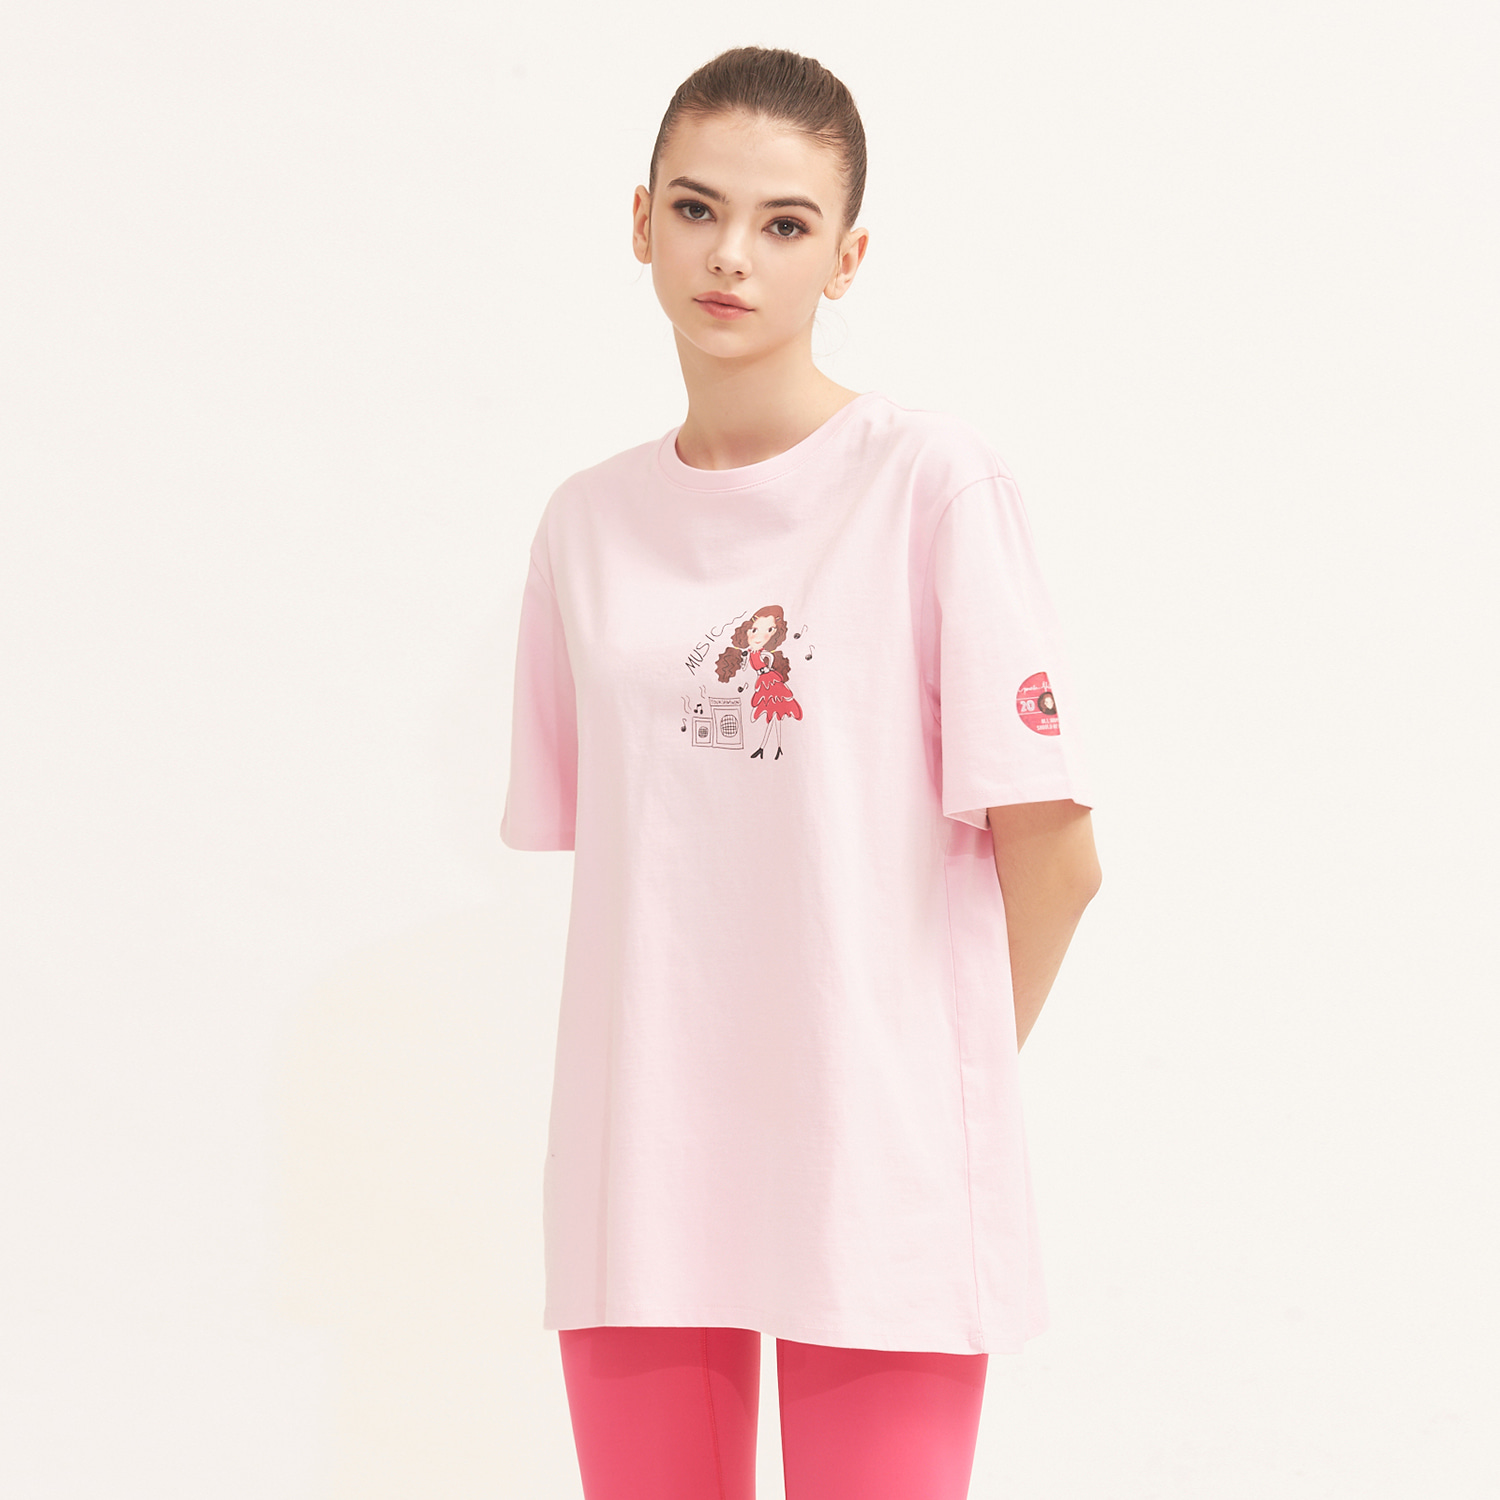 해피티셔츠 F 핑크루나